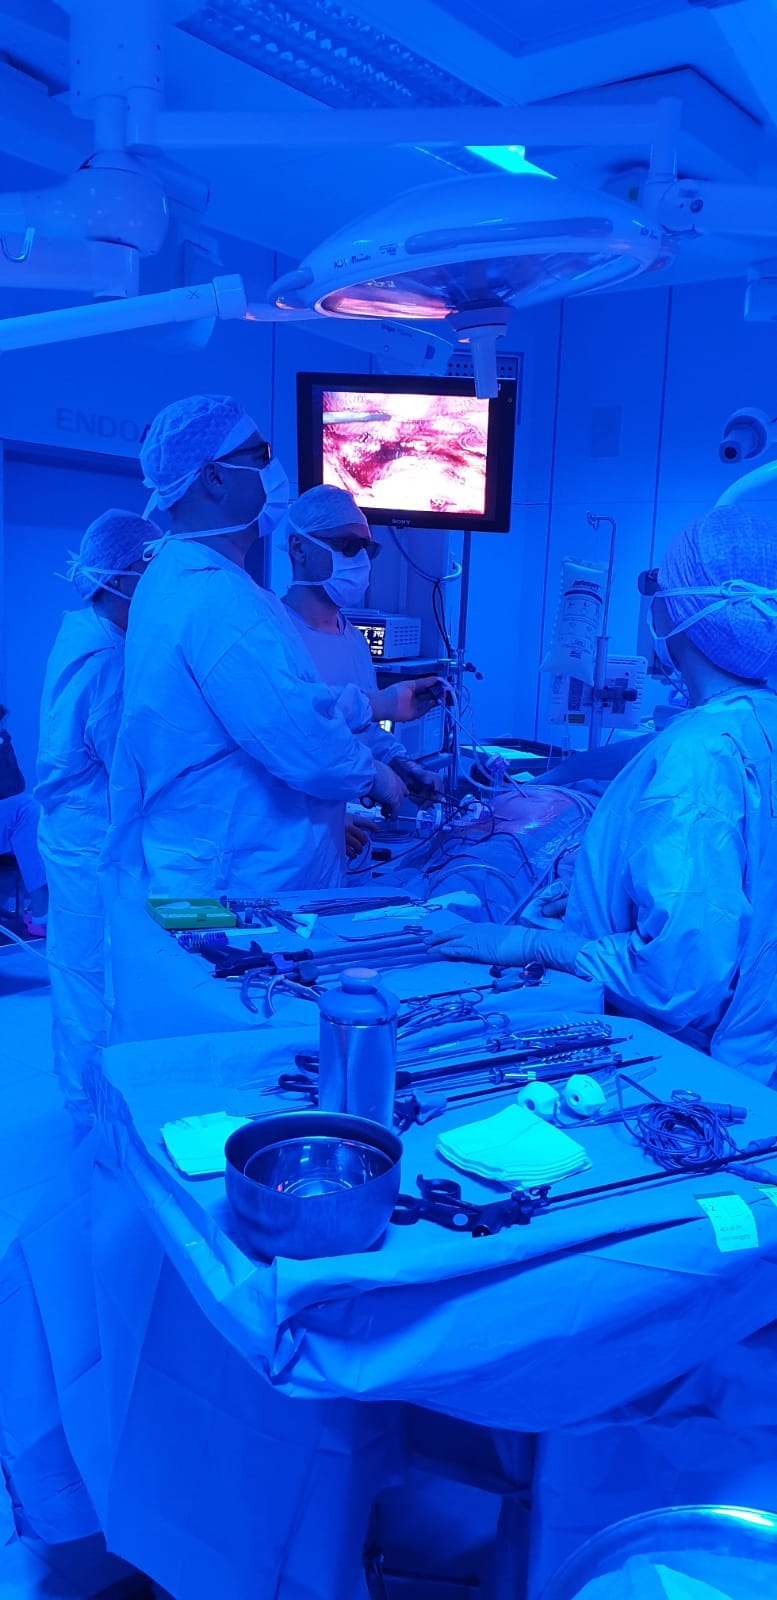 Nell'Urologia varesina è arrivata la videolaparoscopia in 3D